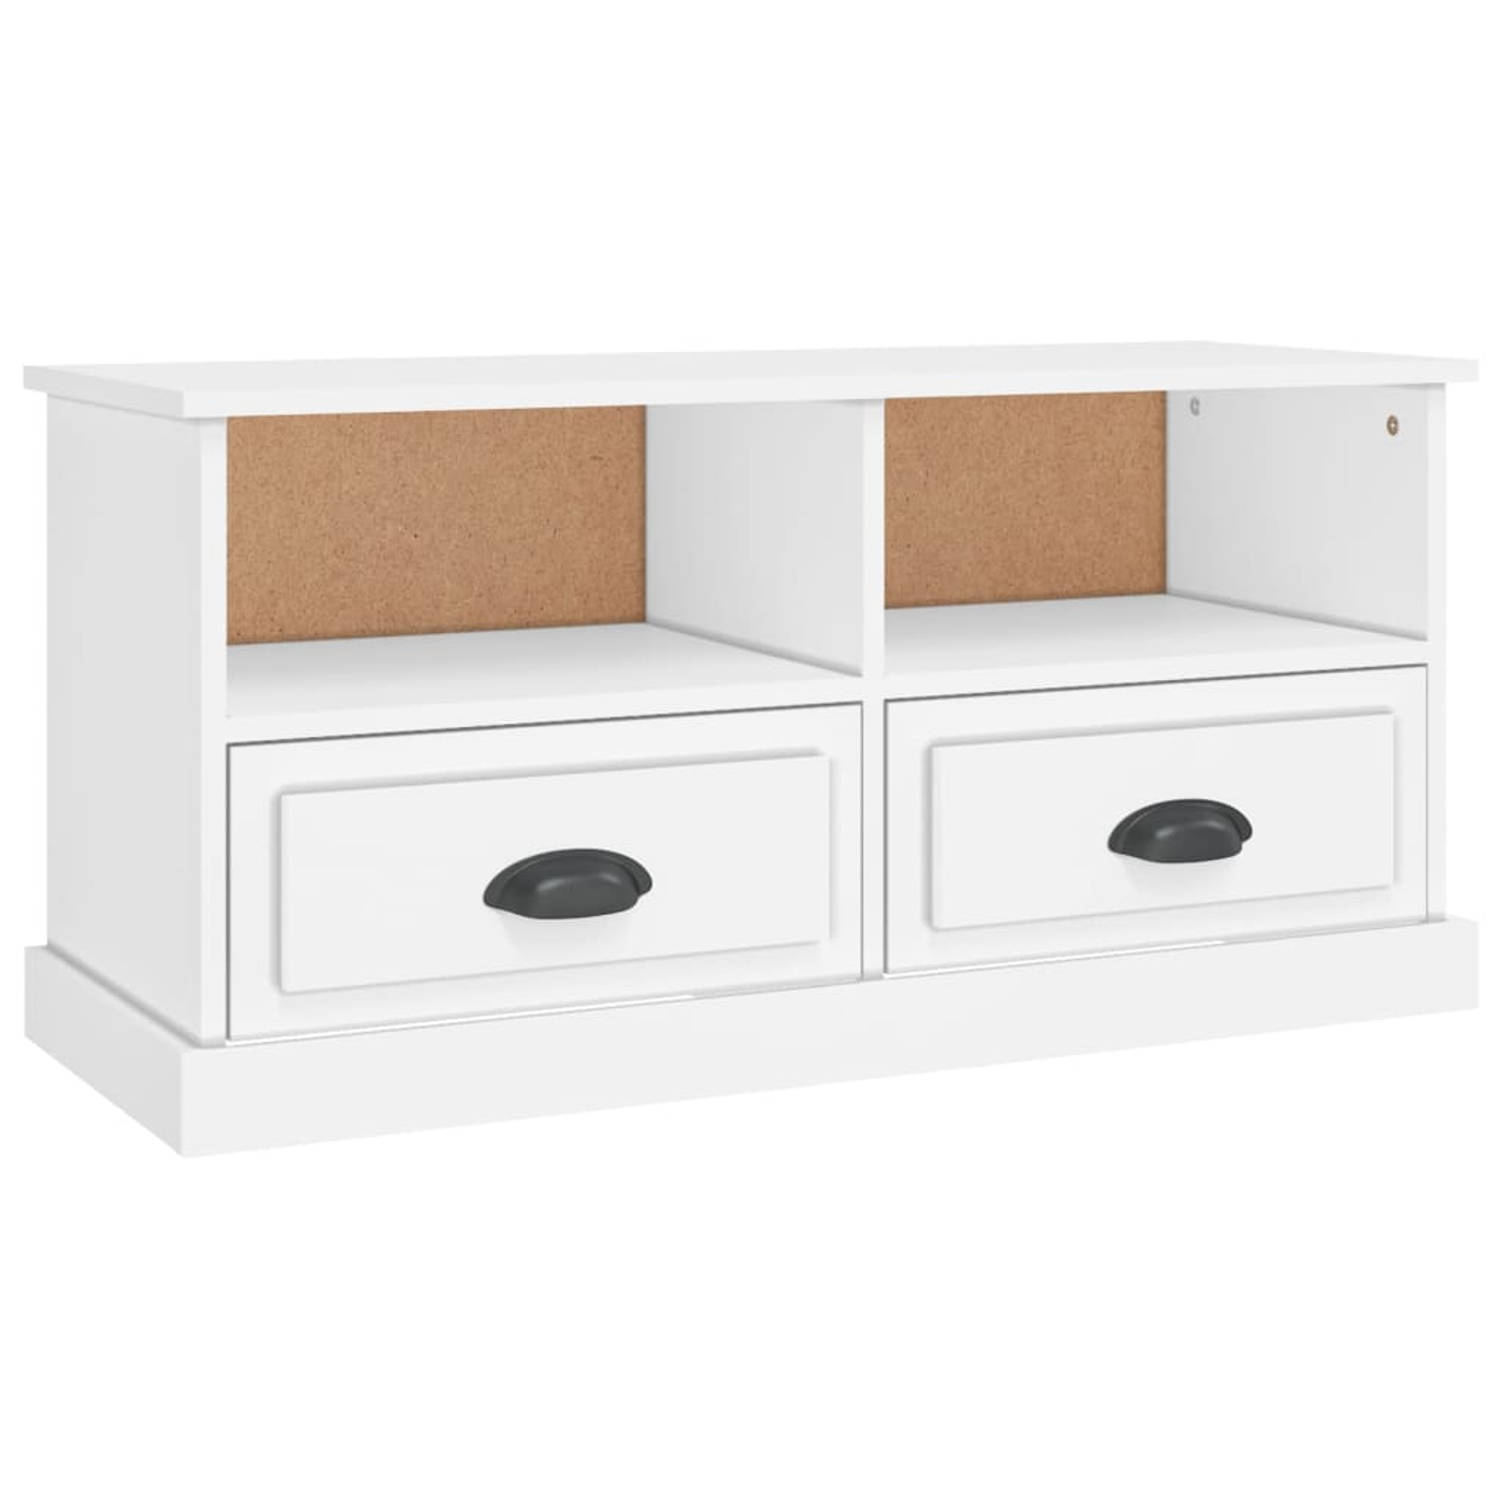 The Living Store TV-meubel - Trendy en praktisch ontwerp - Duurzaam hout - Voldoende opbergruimte - Stevig blad - Wit - 93x35.5x45 cm